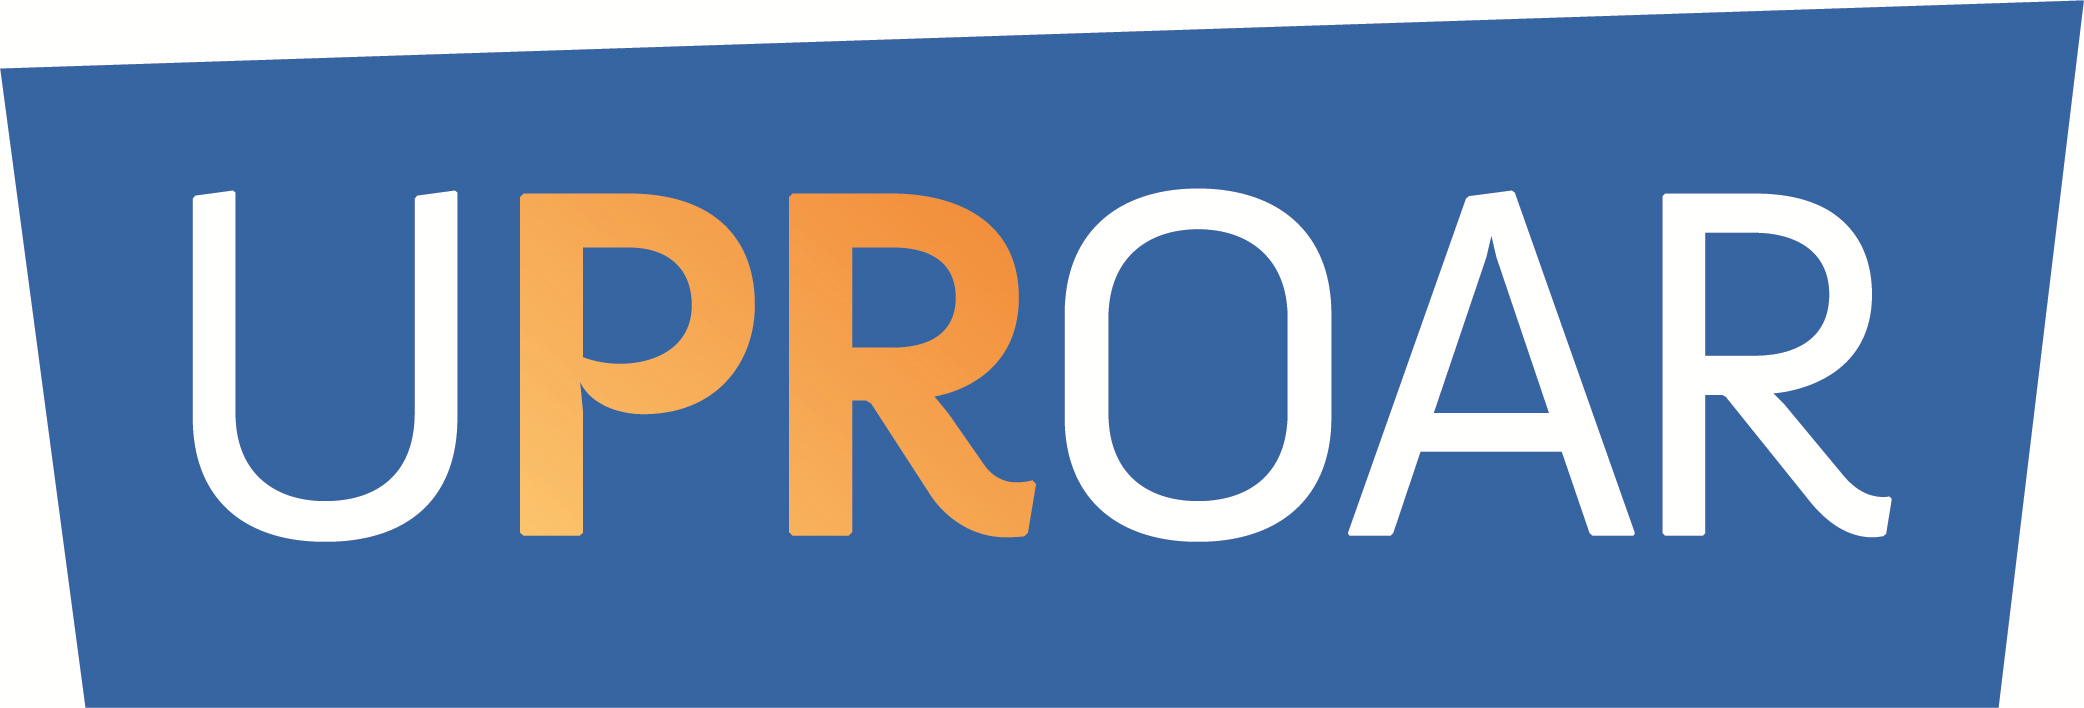 Uproar PR Company Logo